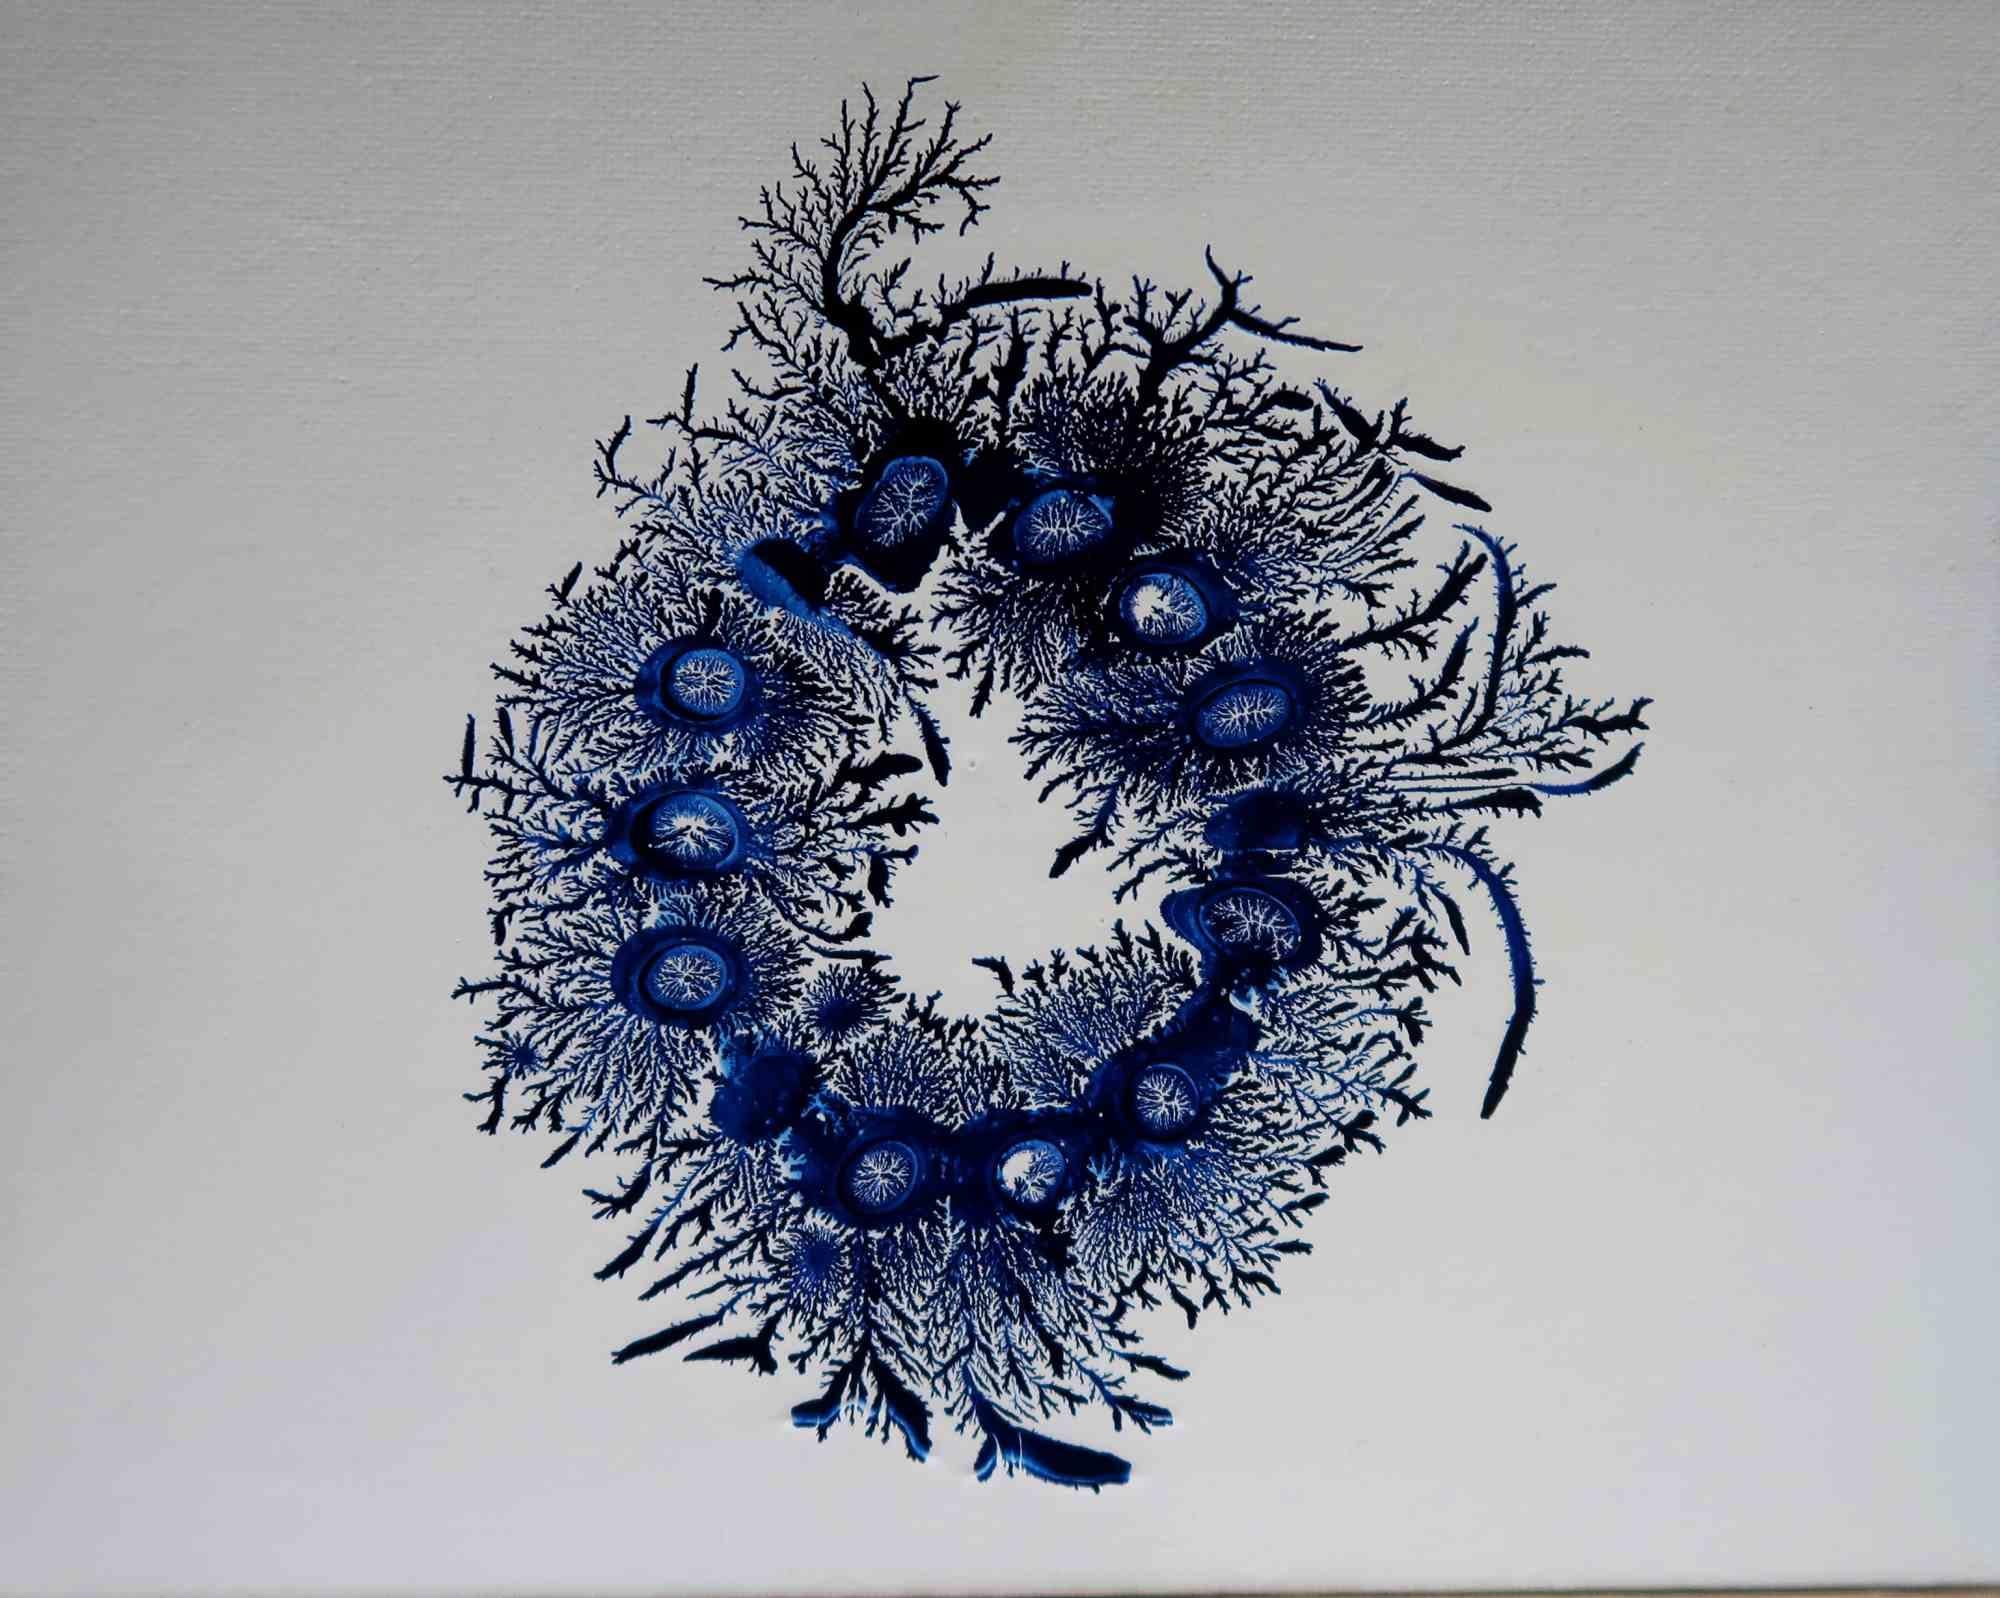 Amanda Ludovisi Figurative Art - Blue Life - Painting - 2020s